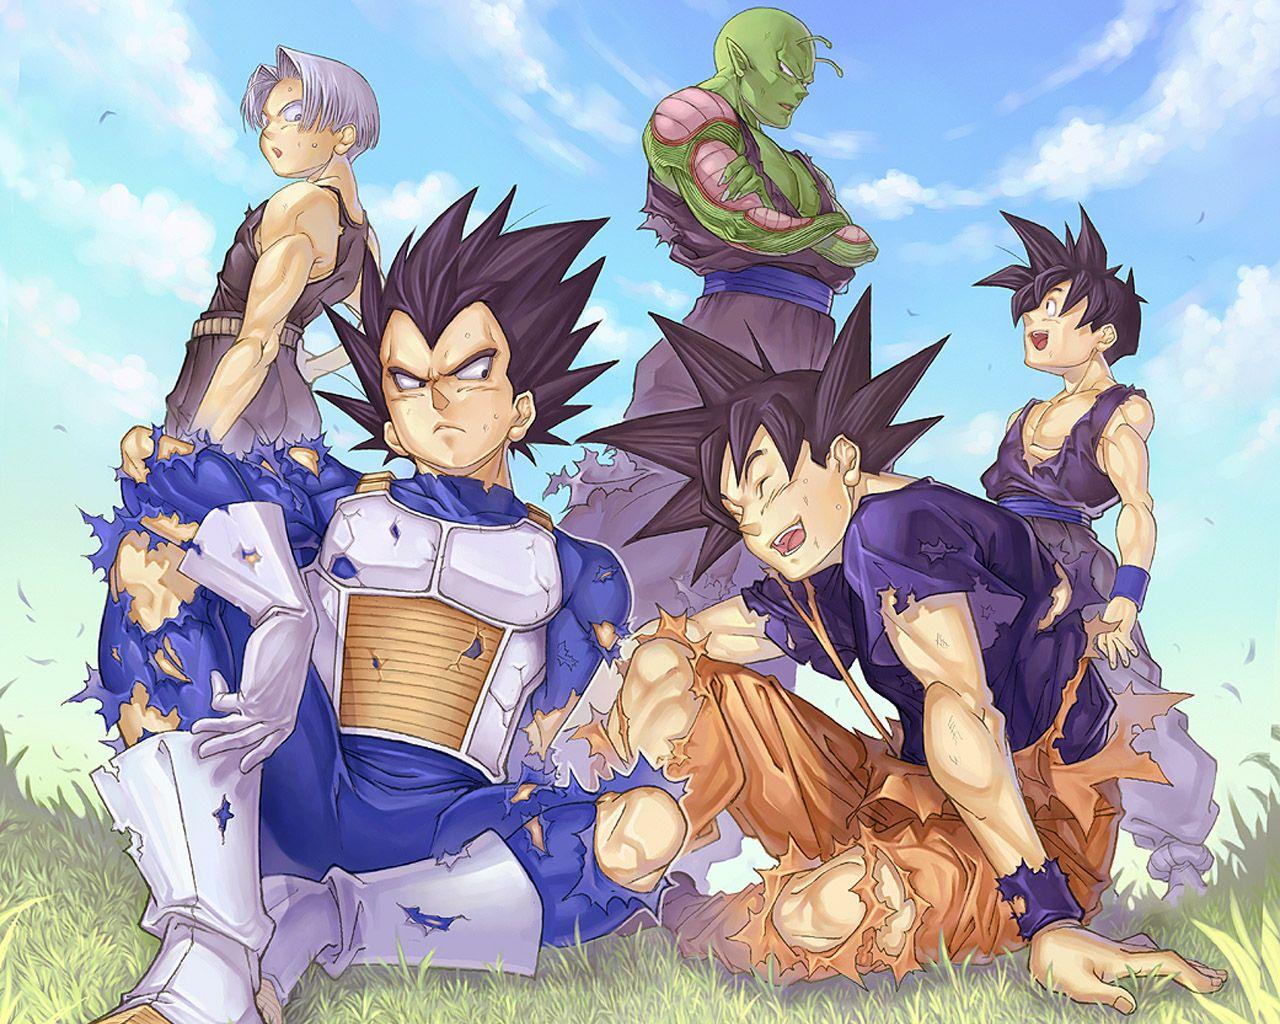 Dragon Ball Z image *Goku & Vageta* HD wallpaper and background